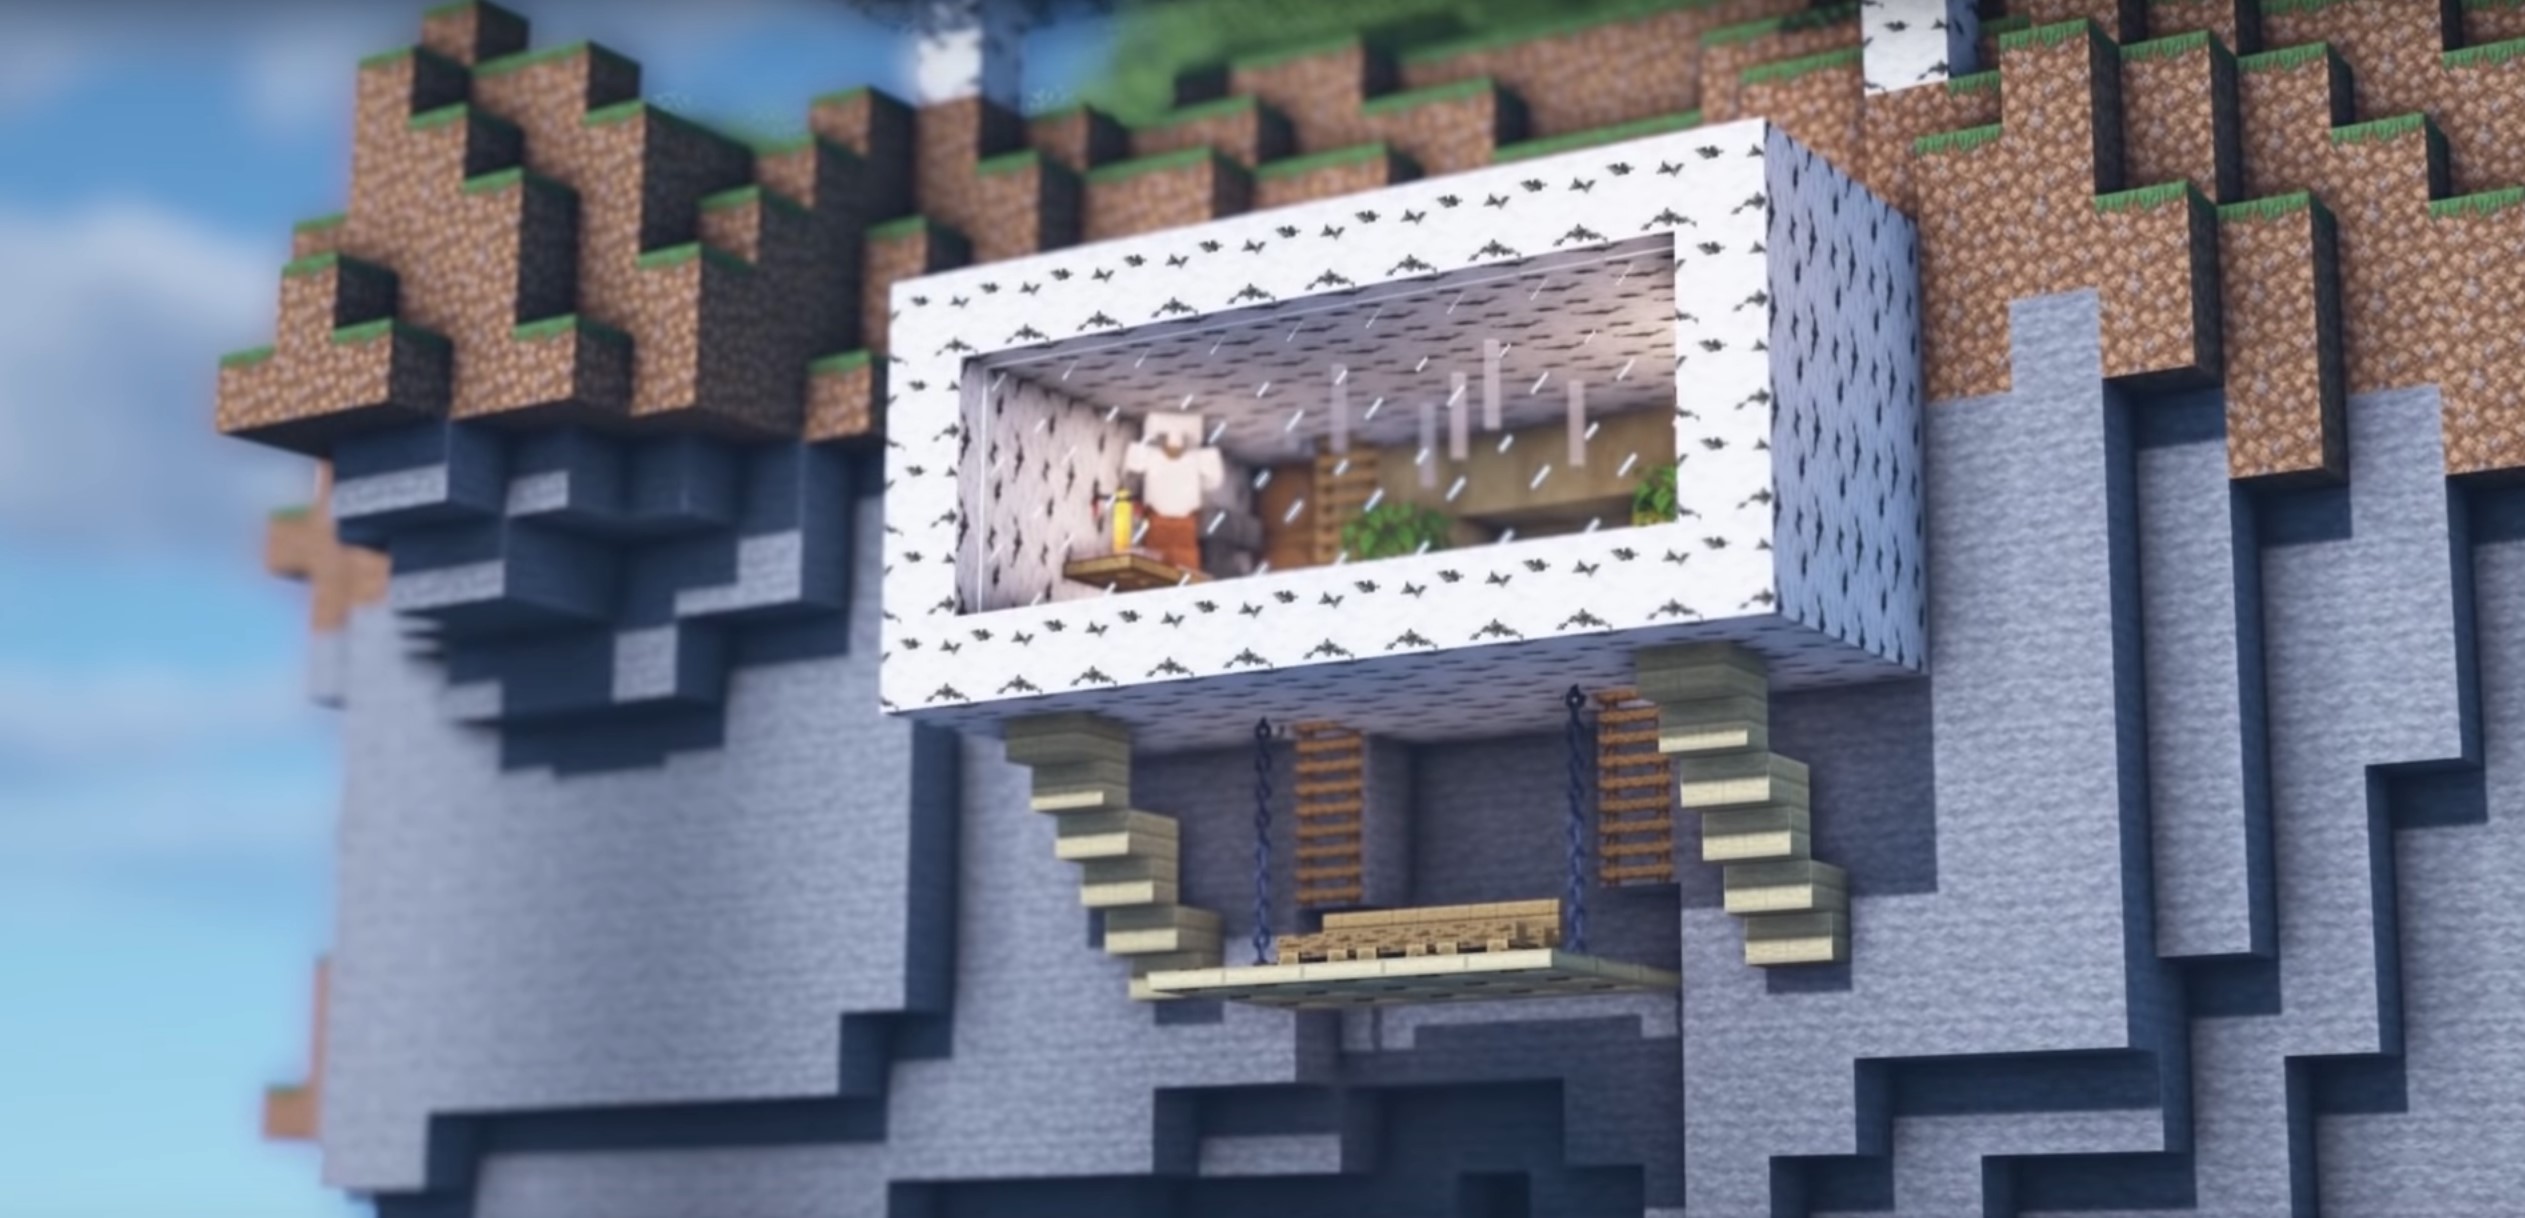 Minecraft Birch Wood Mountain Survival House idea